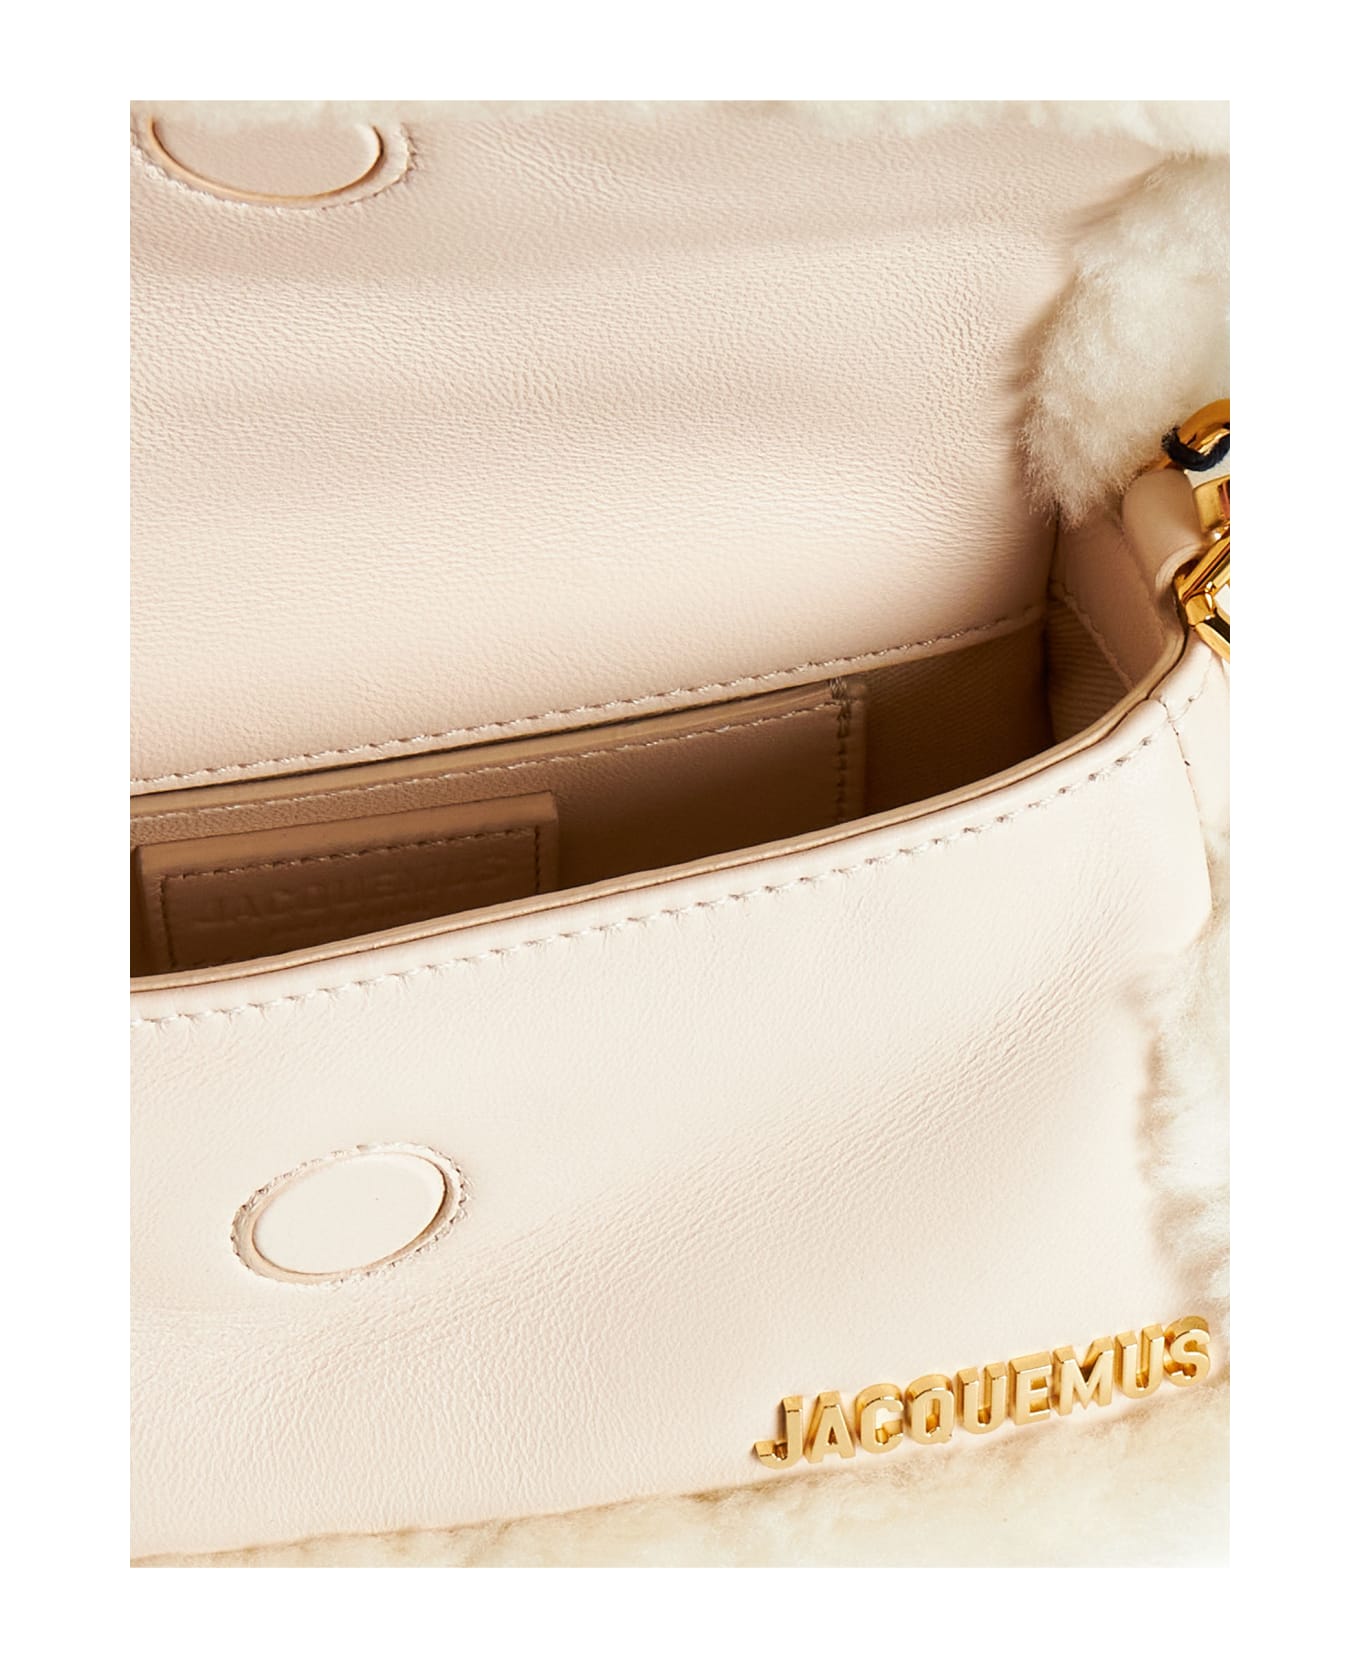 Jacquemus Le Petit Bambimou Bag - Light beige